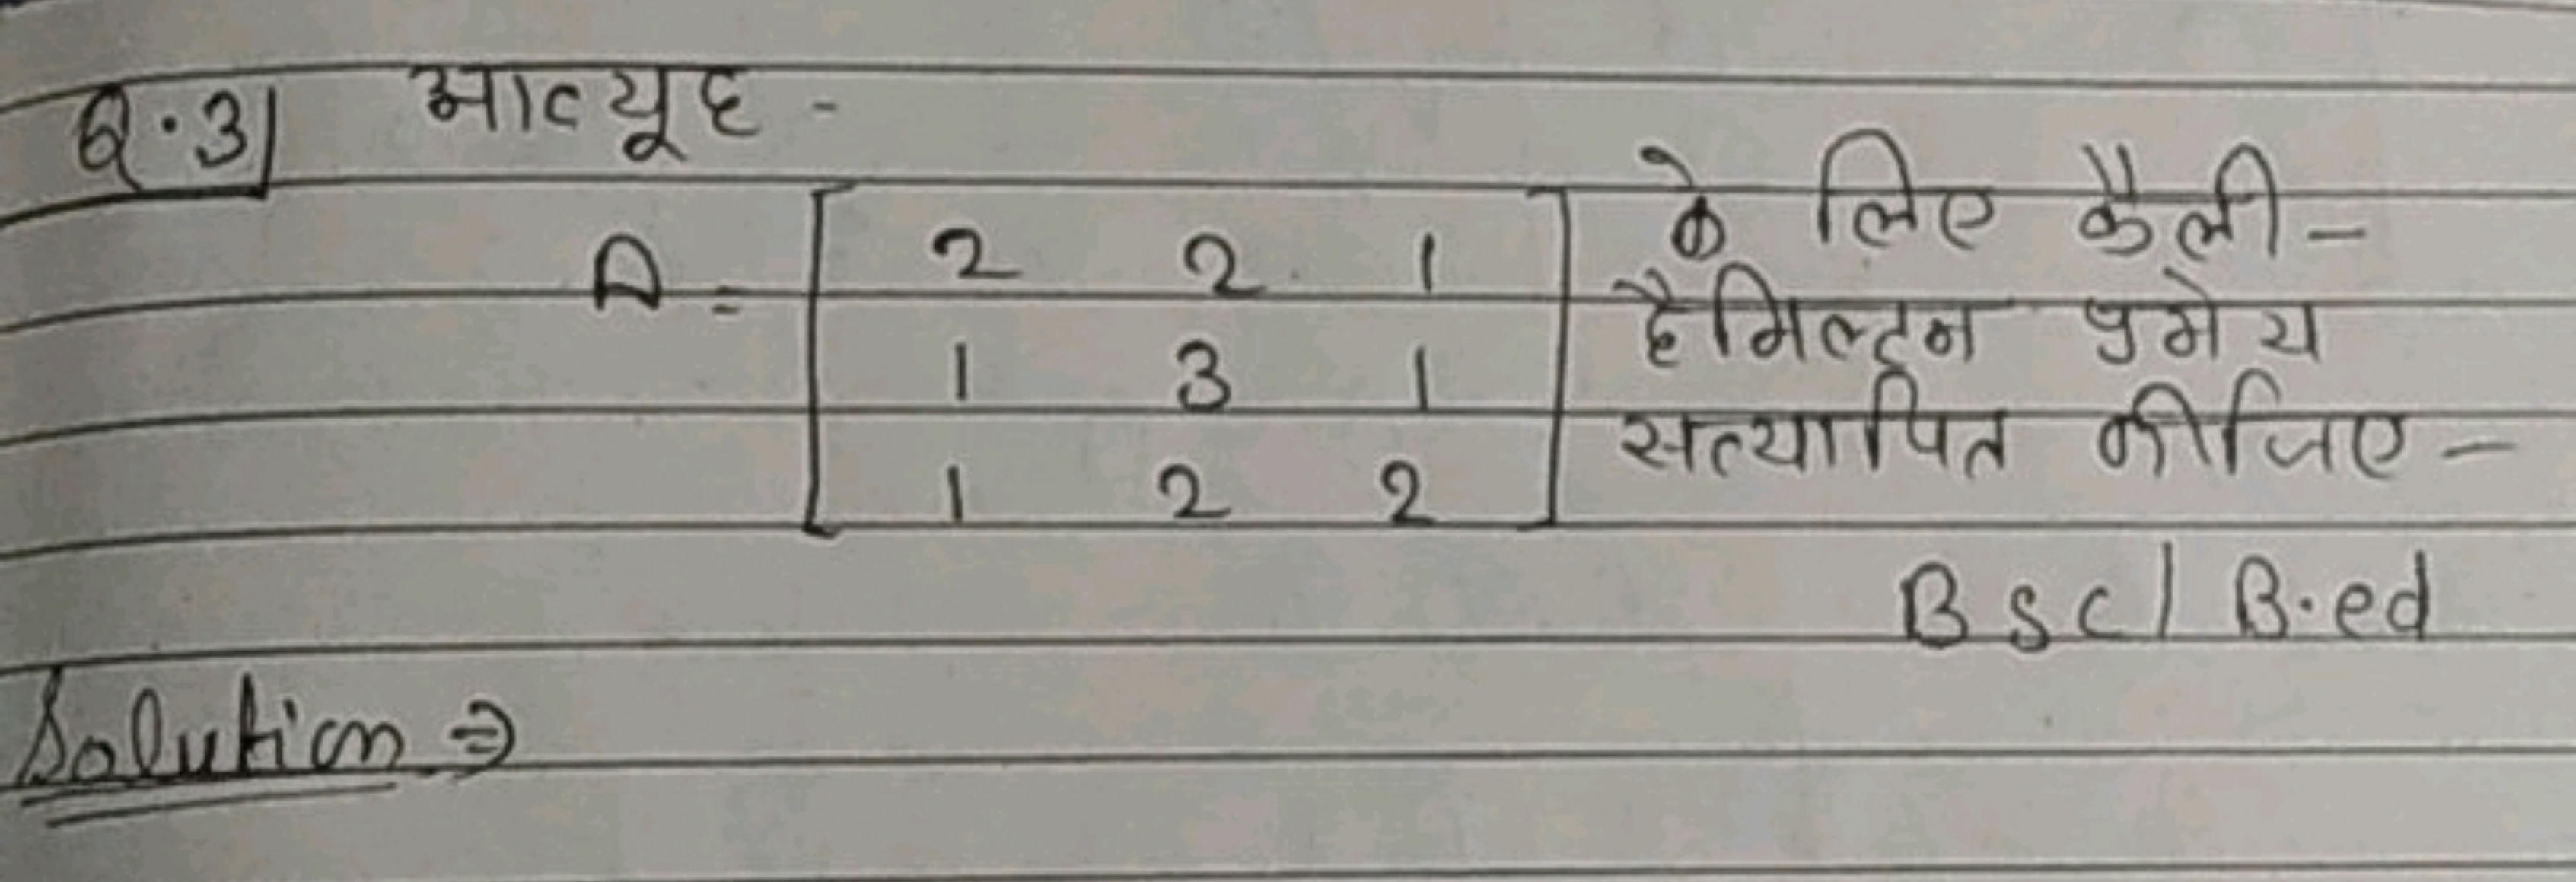 Q.3) आव्यूह-
\[
A=\left[\begin{array}{lll}
2 & 2 & 1 \\
1 & 3 & 1 \\
1